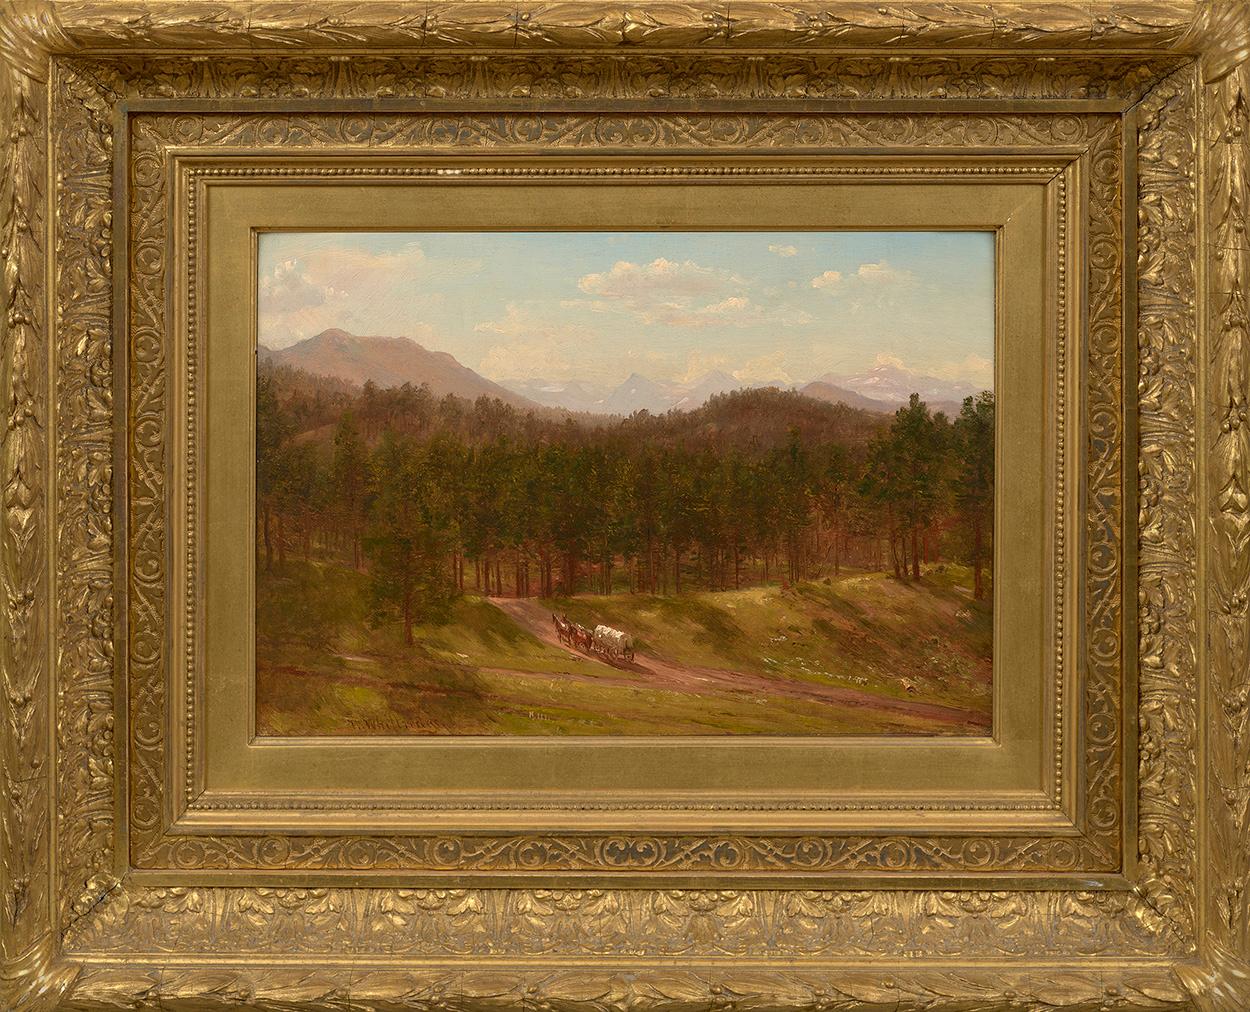 A Mountain Trail, Colorado, 1868 - Painting by Thomas Worthington Whittredge